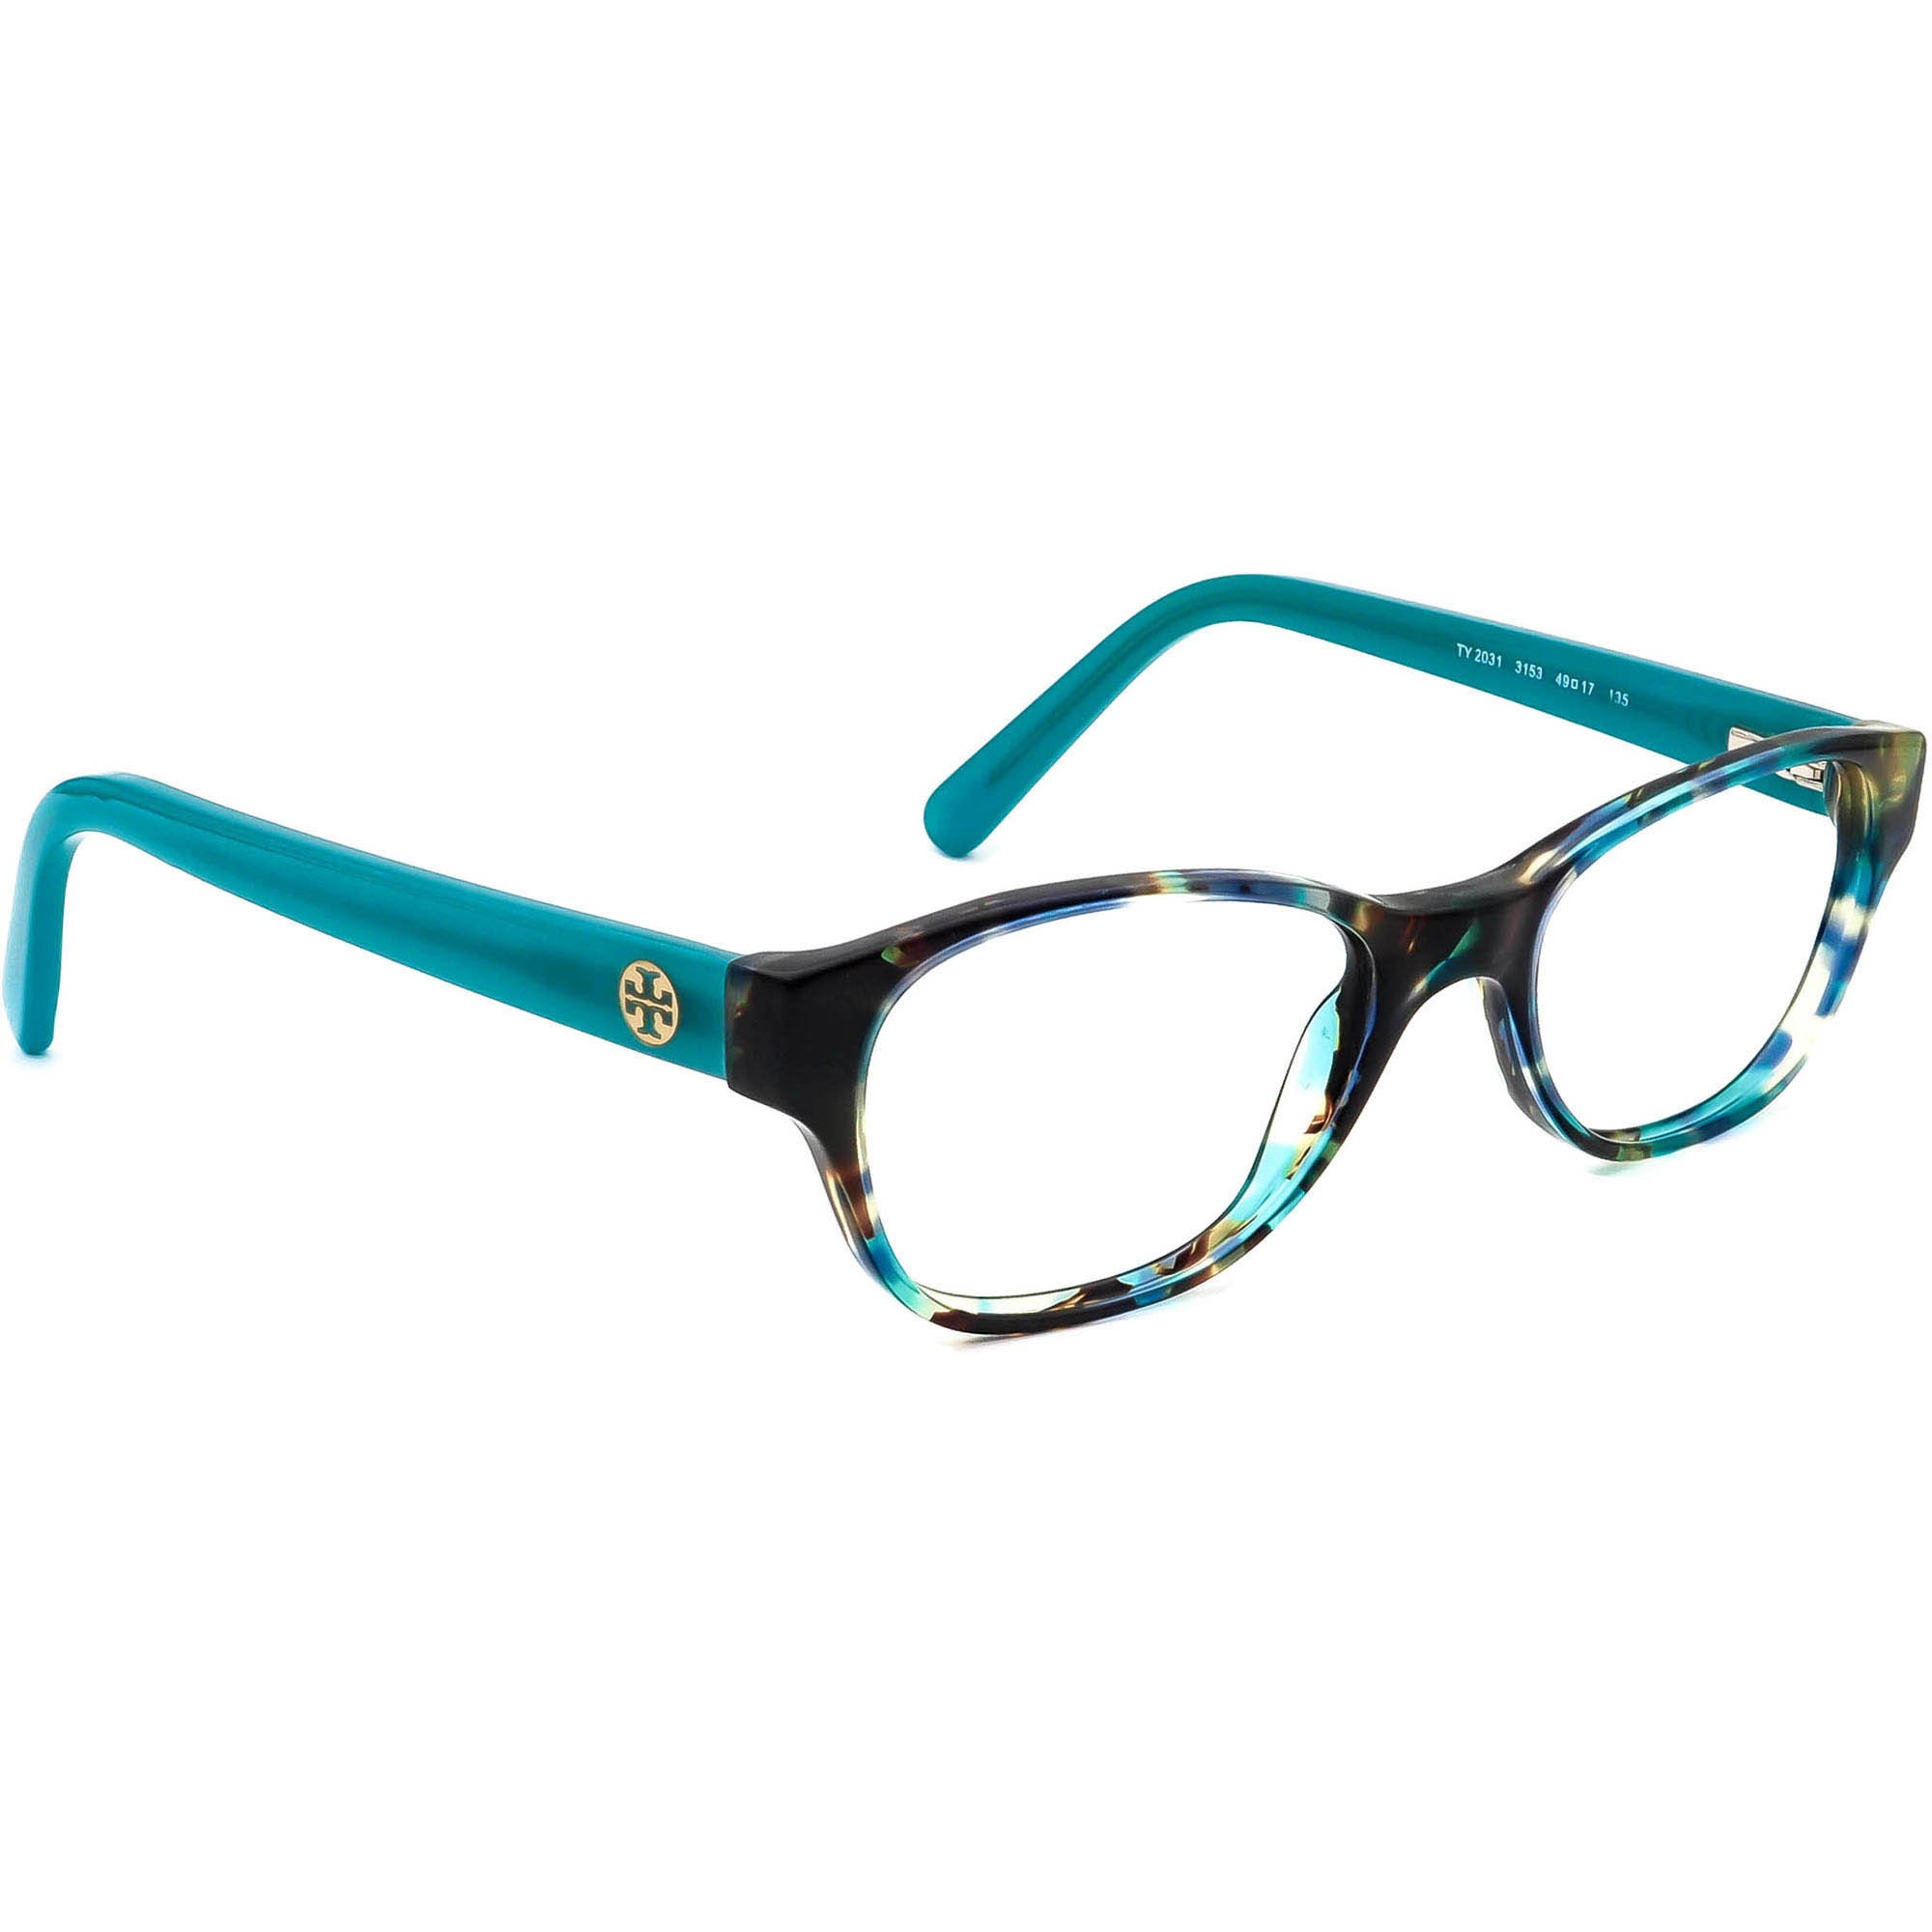 Tory Burch Eyeglasses TY 2031 3153 Blue Tortoise B-shape Frame - Etsy  Denmark